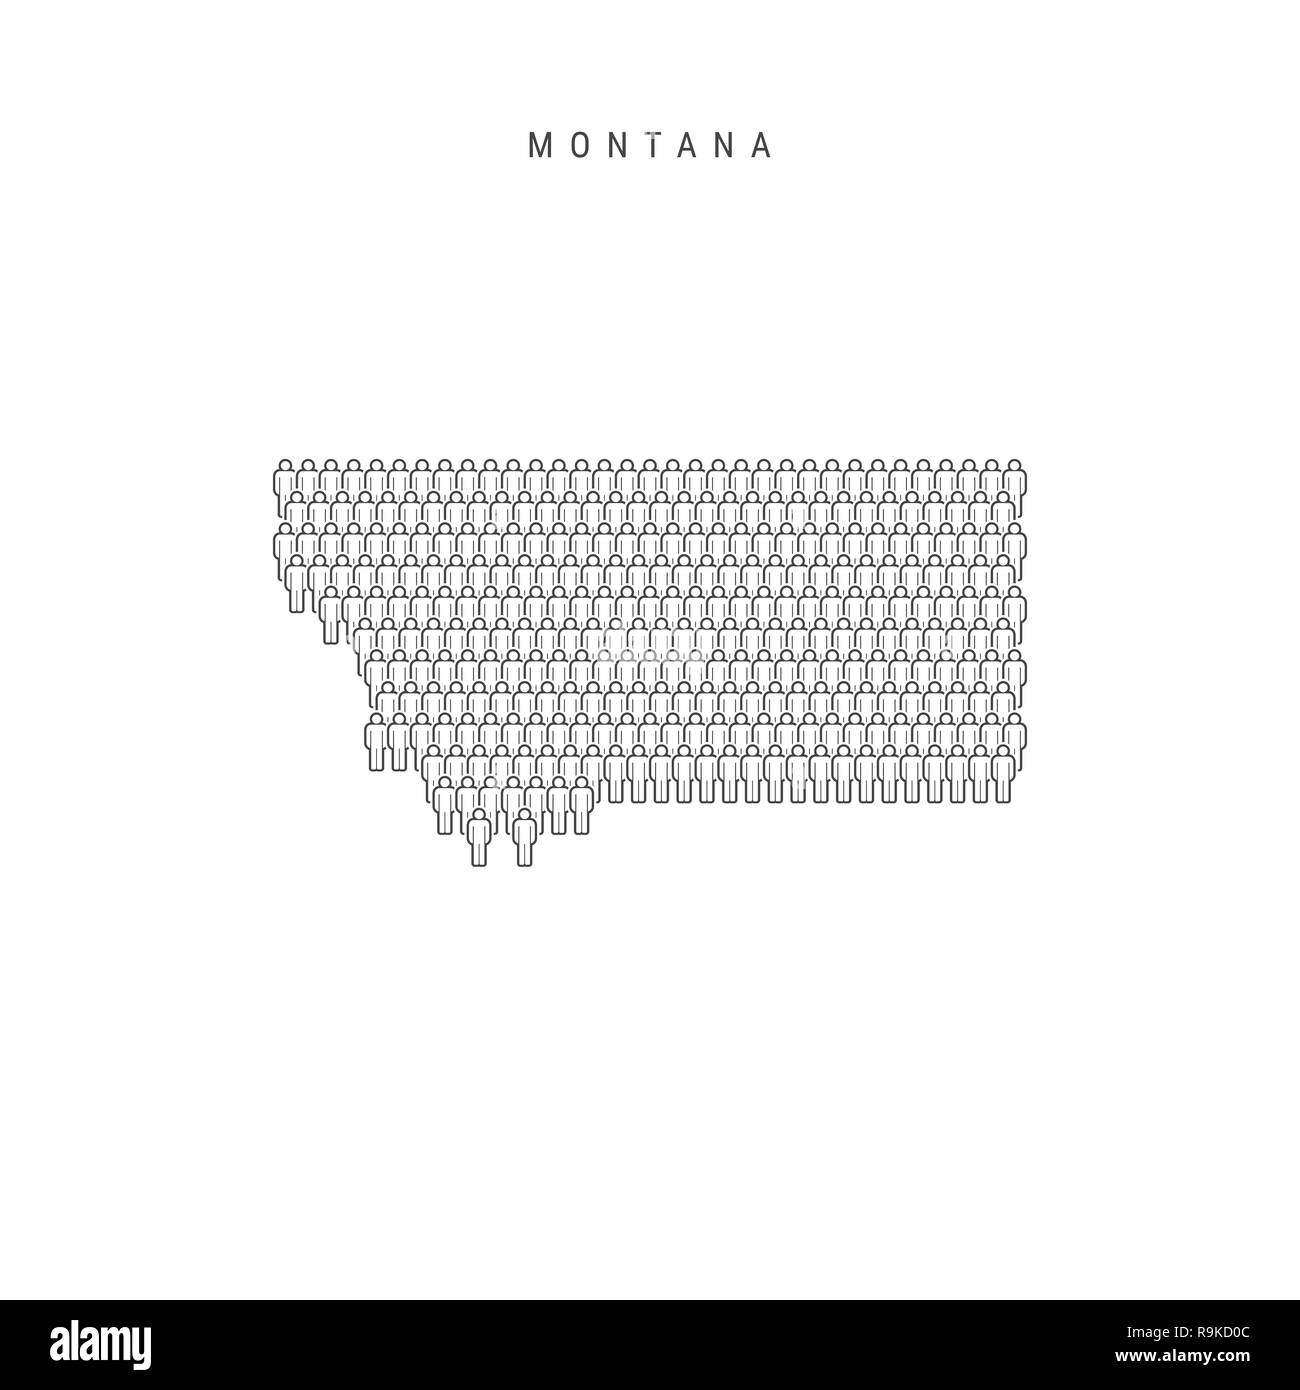 Leute Karte von Montana, US-Staat. Stilisierte Silhouette, Leute in der Form einer Karte von Montana. Montana Bevölkerung. Abbildung isoliert auf Whit Stockfoto